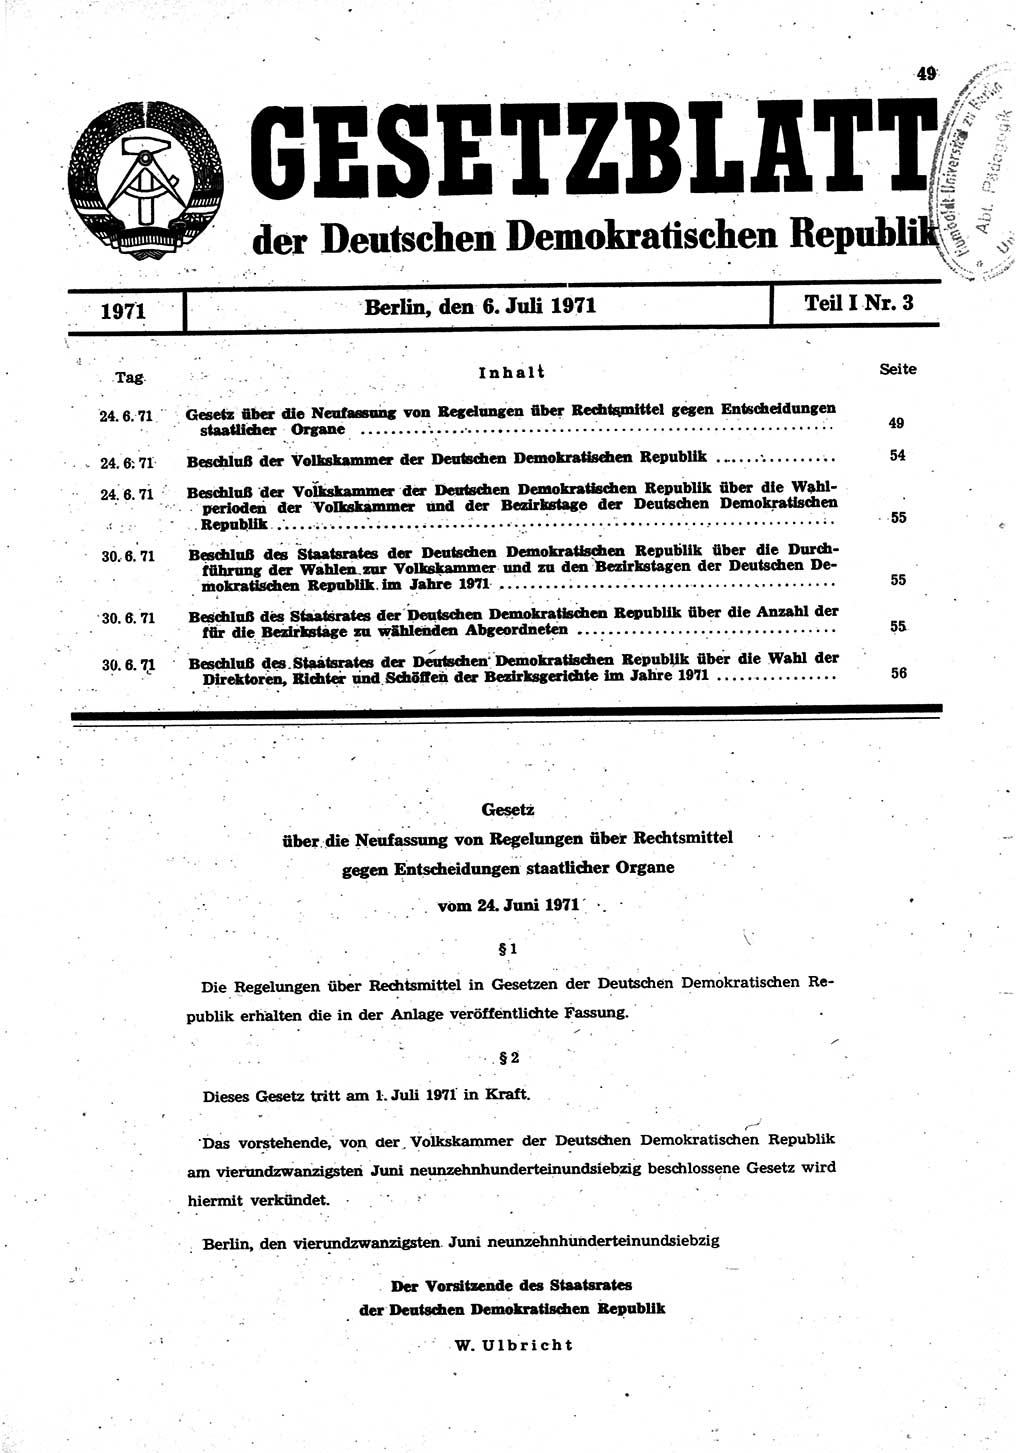 Gesetzblatt (GBl.) der Deutschen Demokratischen Republik (DDR) Teil Ⅰ 1971, Seite 49 (GBl. DDR Ⅰ 1971, S. 49)